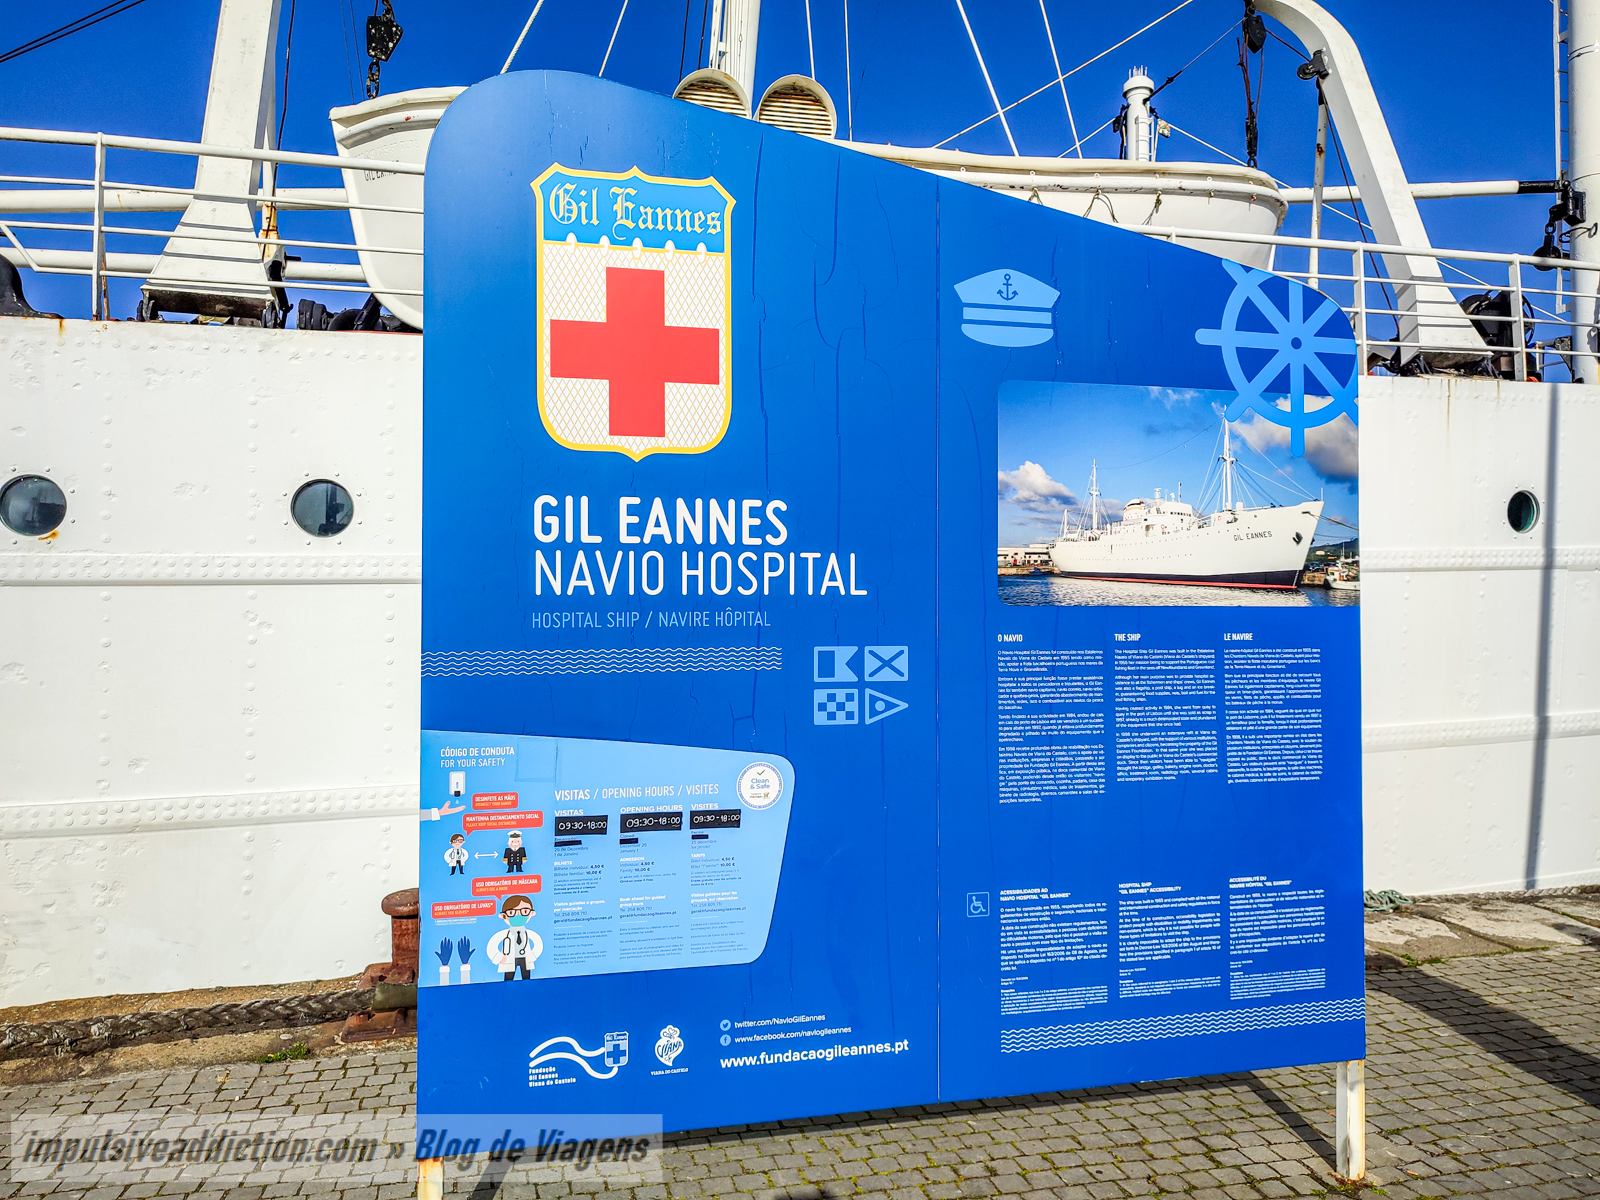 Navio Hospital Gil Eannes em Viana do Castelo